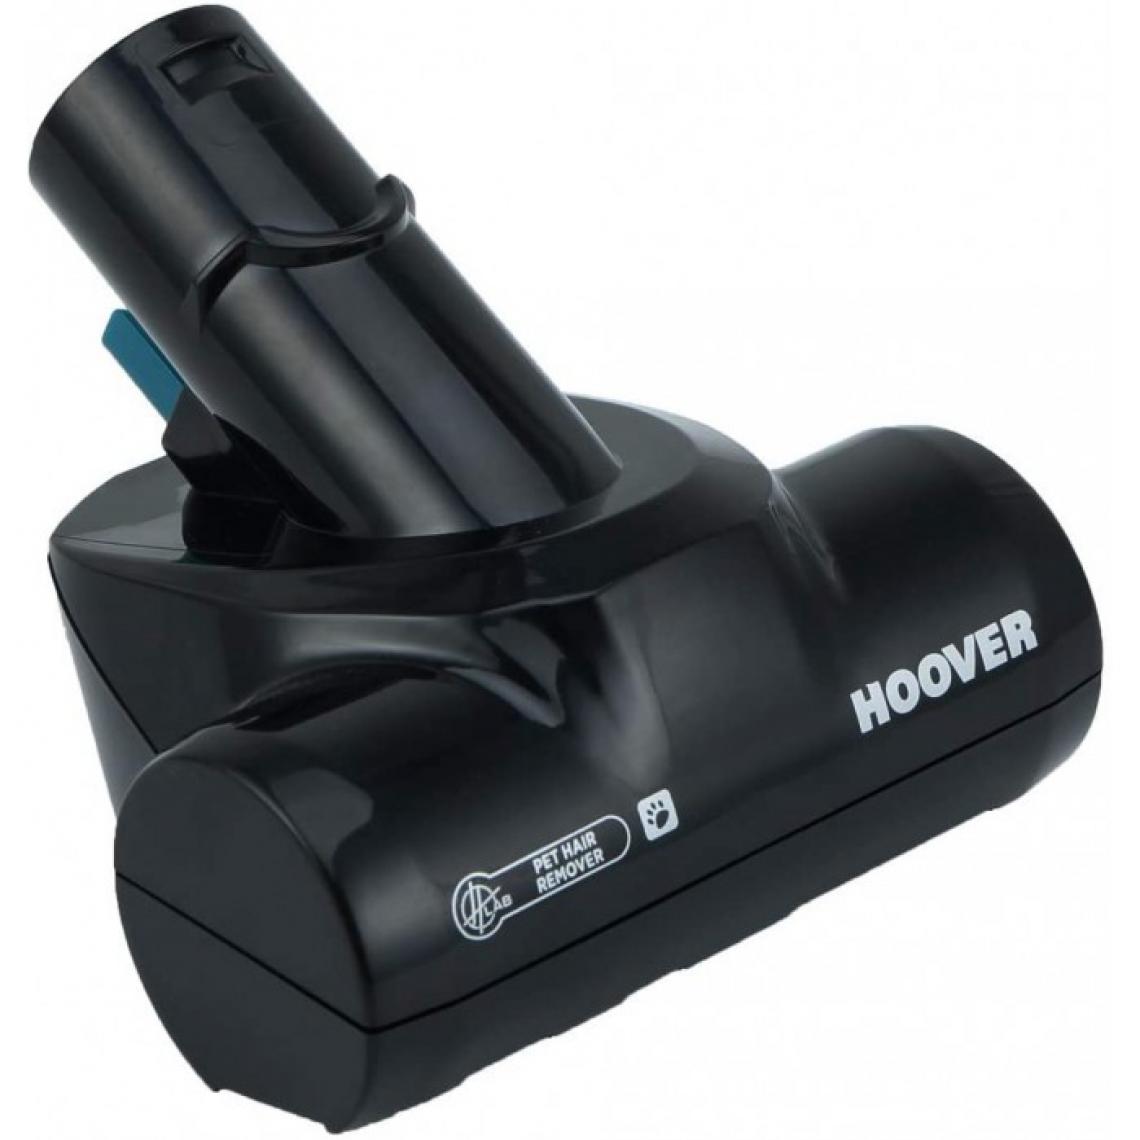 Hoover - Mini turbo-brosse j63 spéciale poils d'animaux pour aspirateurs freedom 2in1 hoover - diamètre : 12 cm. - Accessoire entretien des sols